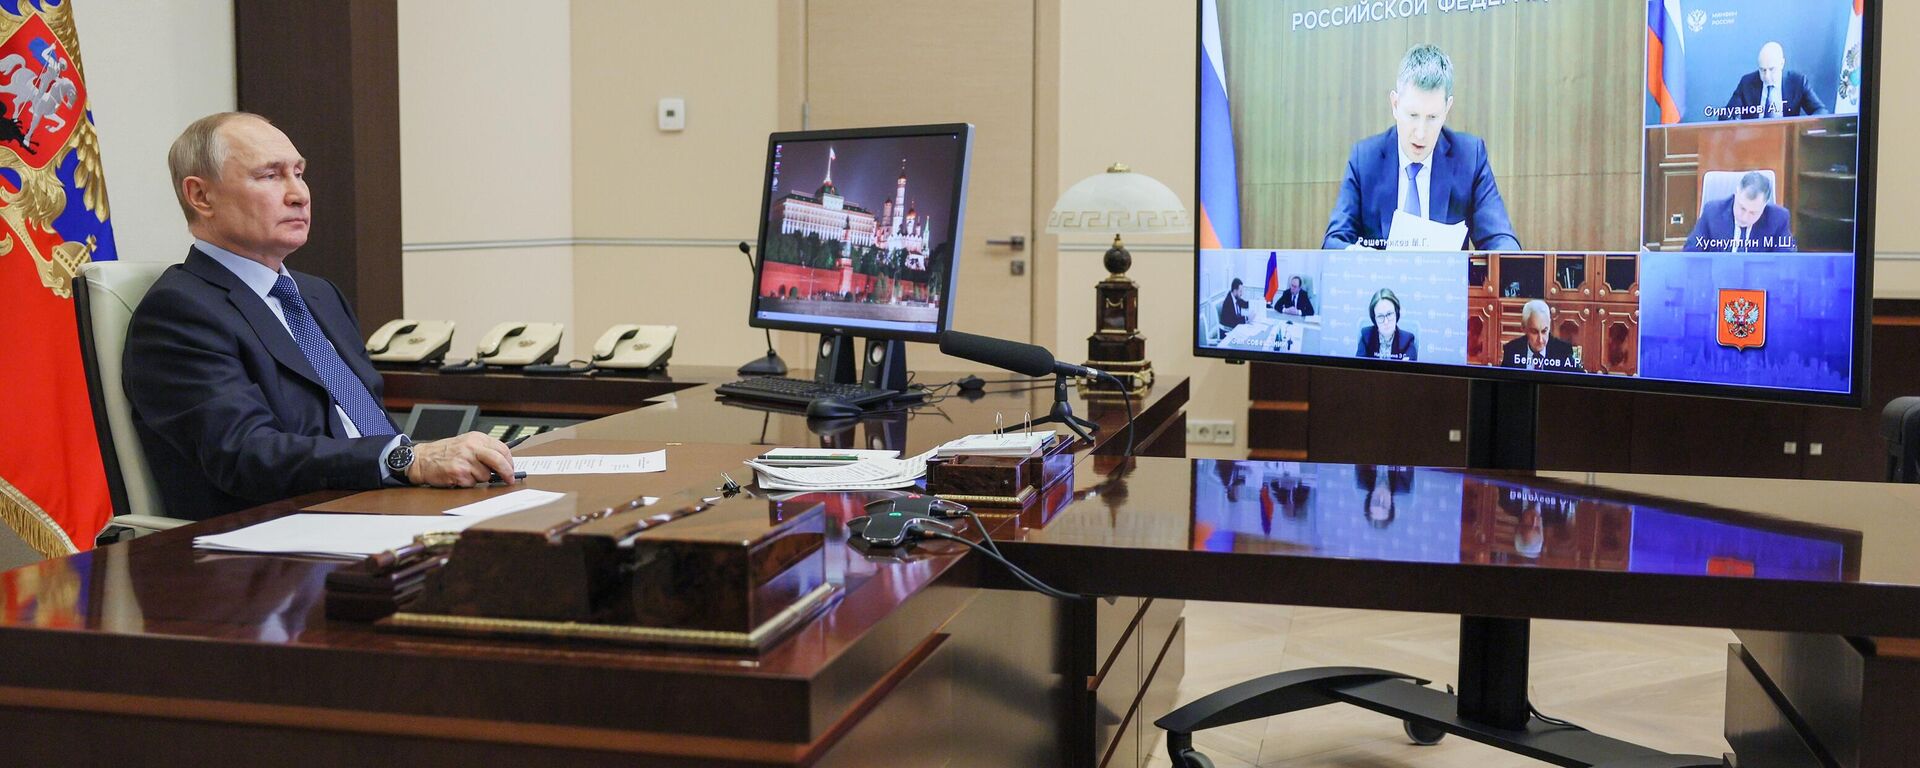 Vladímir Putin, el presidente ruso, mantuvo una reunión con el Gobierno con un especial énfasis en las cuestiones económicas, el 11 de abril de 2023  - Sputnik Mundo, 1920, 11.04.2023